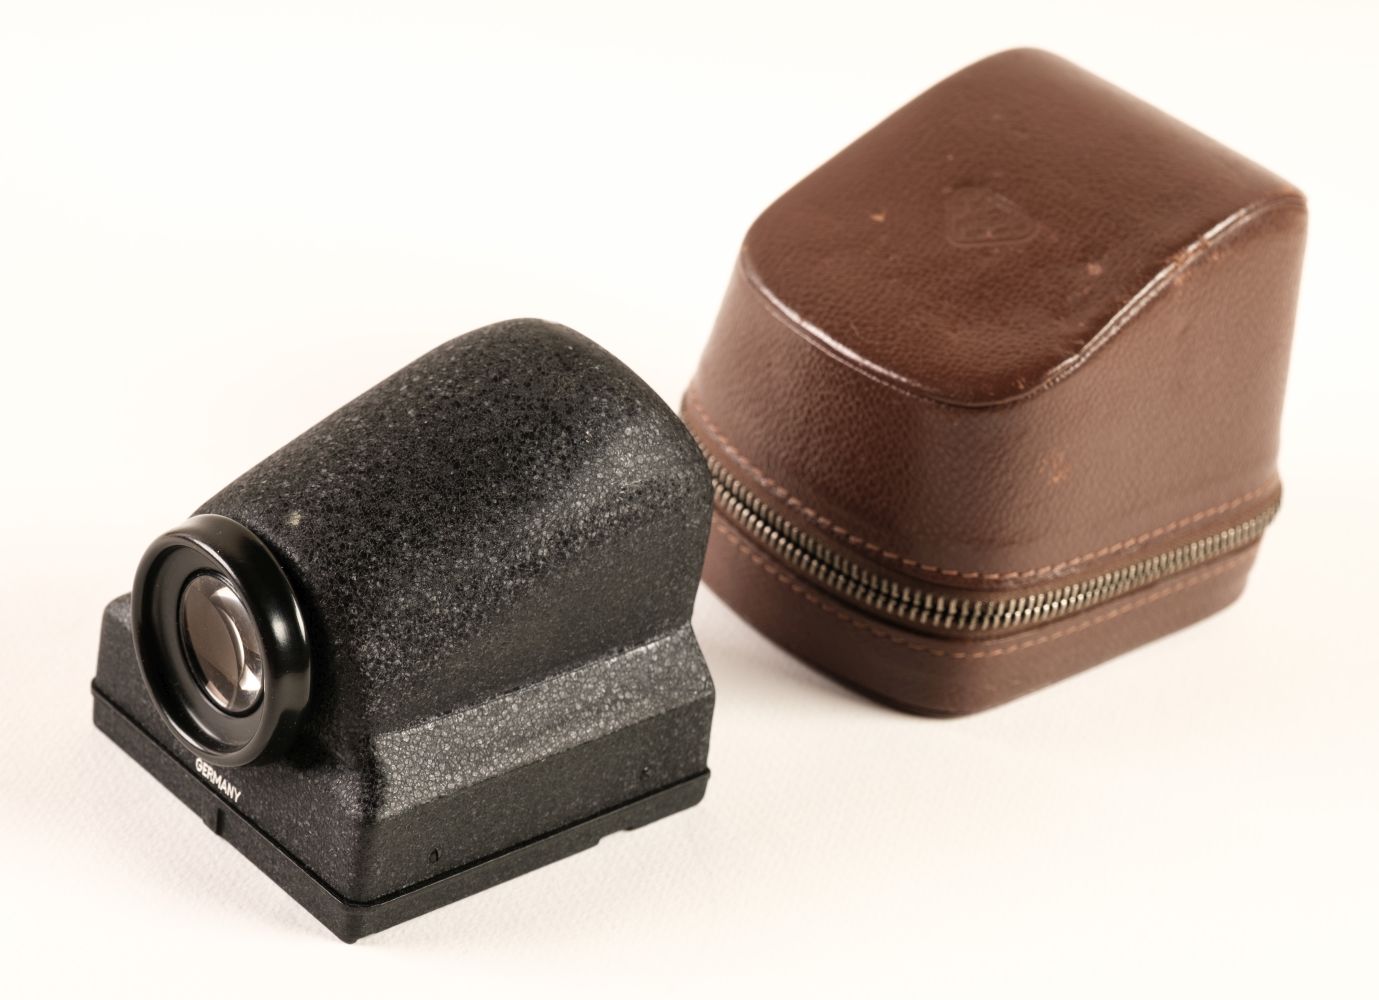 Rolleiflex 3.5T TLR Medium Format Film Camera with prism finder & lots of other accessories - Bild 4 aus 10